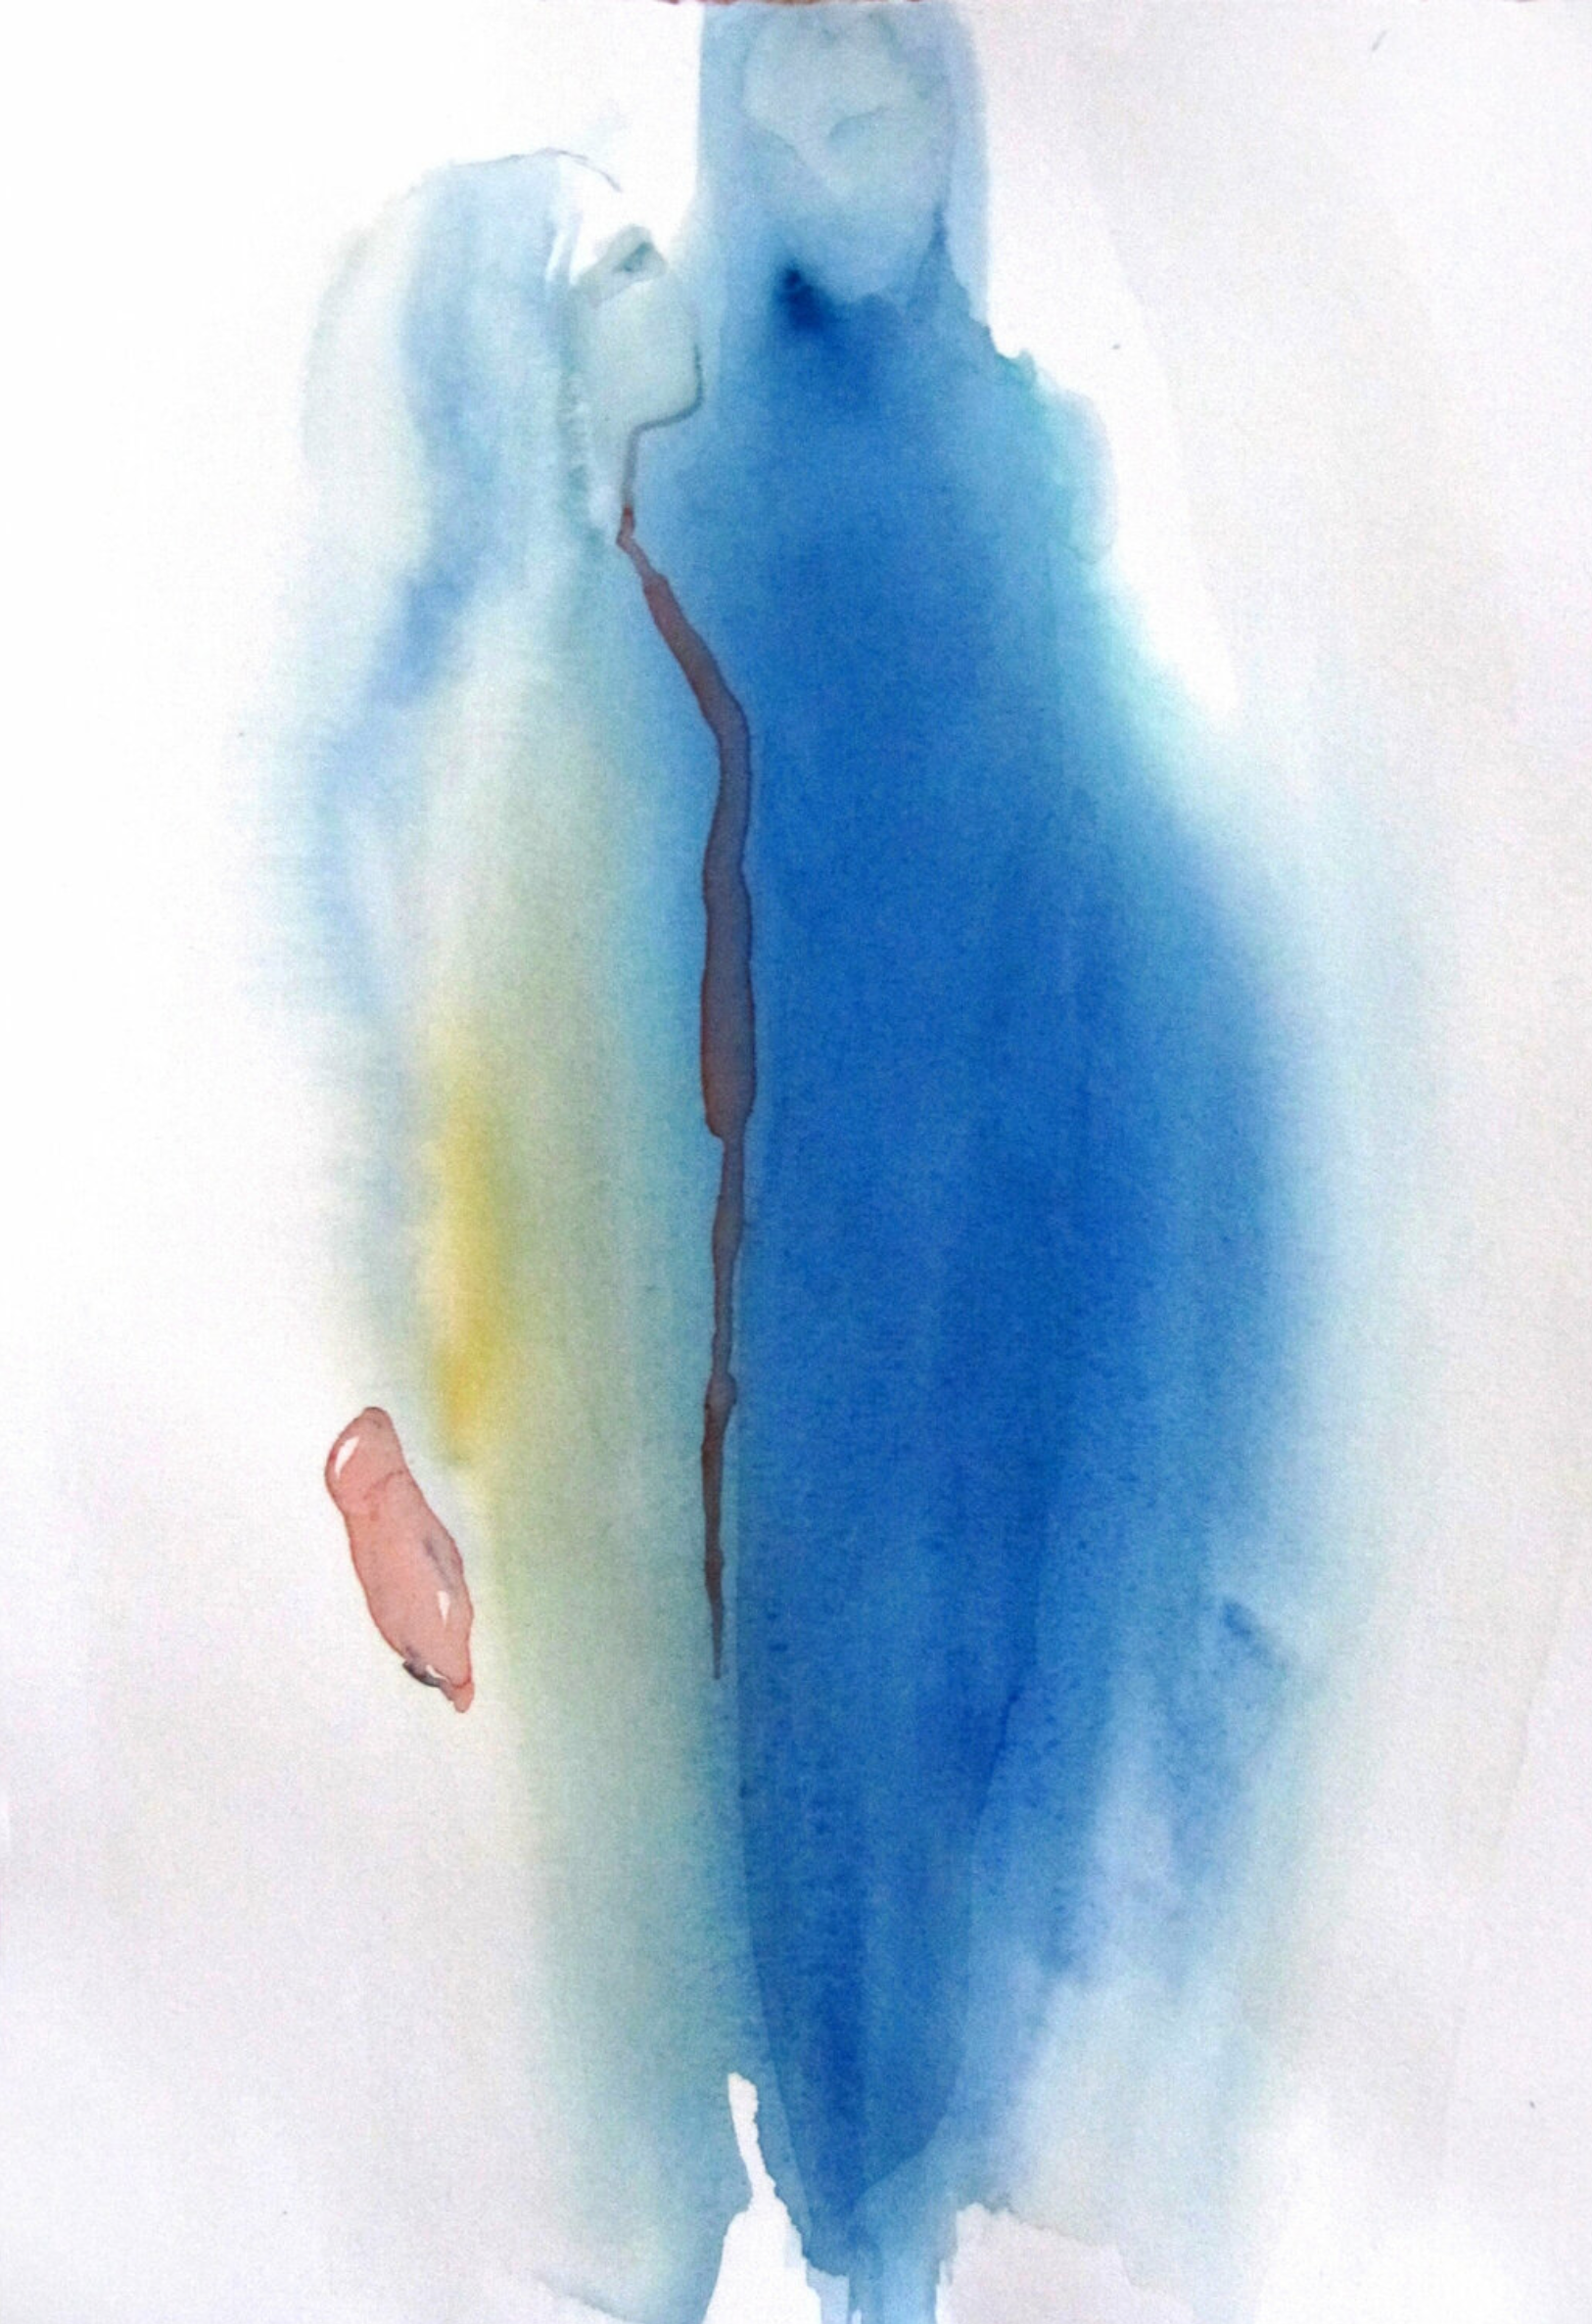 L'opera "Inspiration" di Sylvia Baldeva è un acquerello, un dipinto semi-astratto. Coppia, trascendenza, metafisica, colore blu.